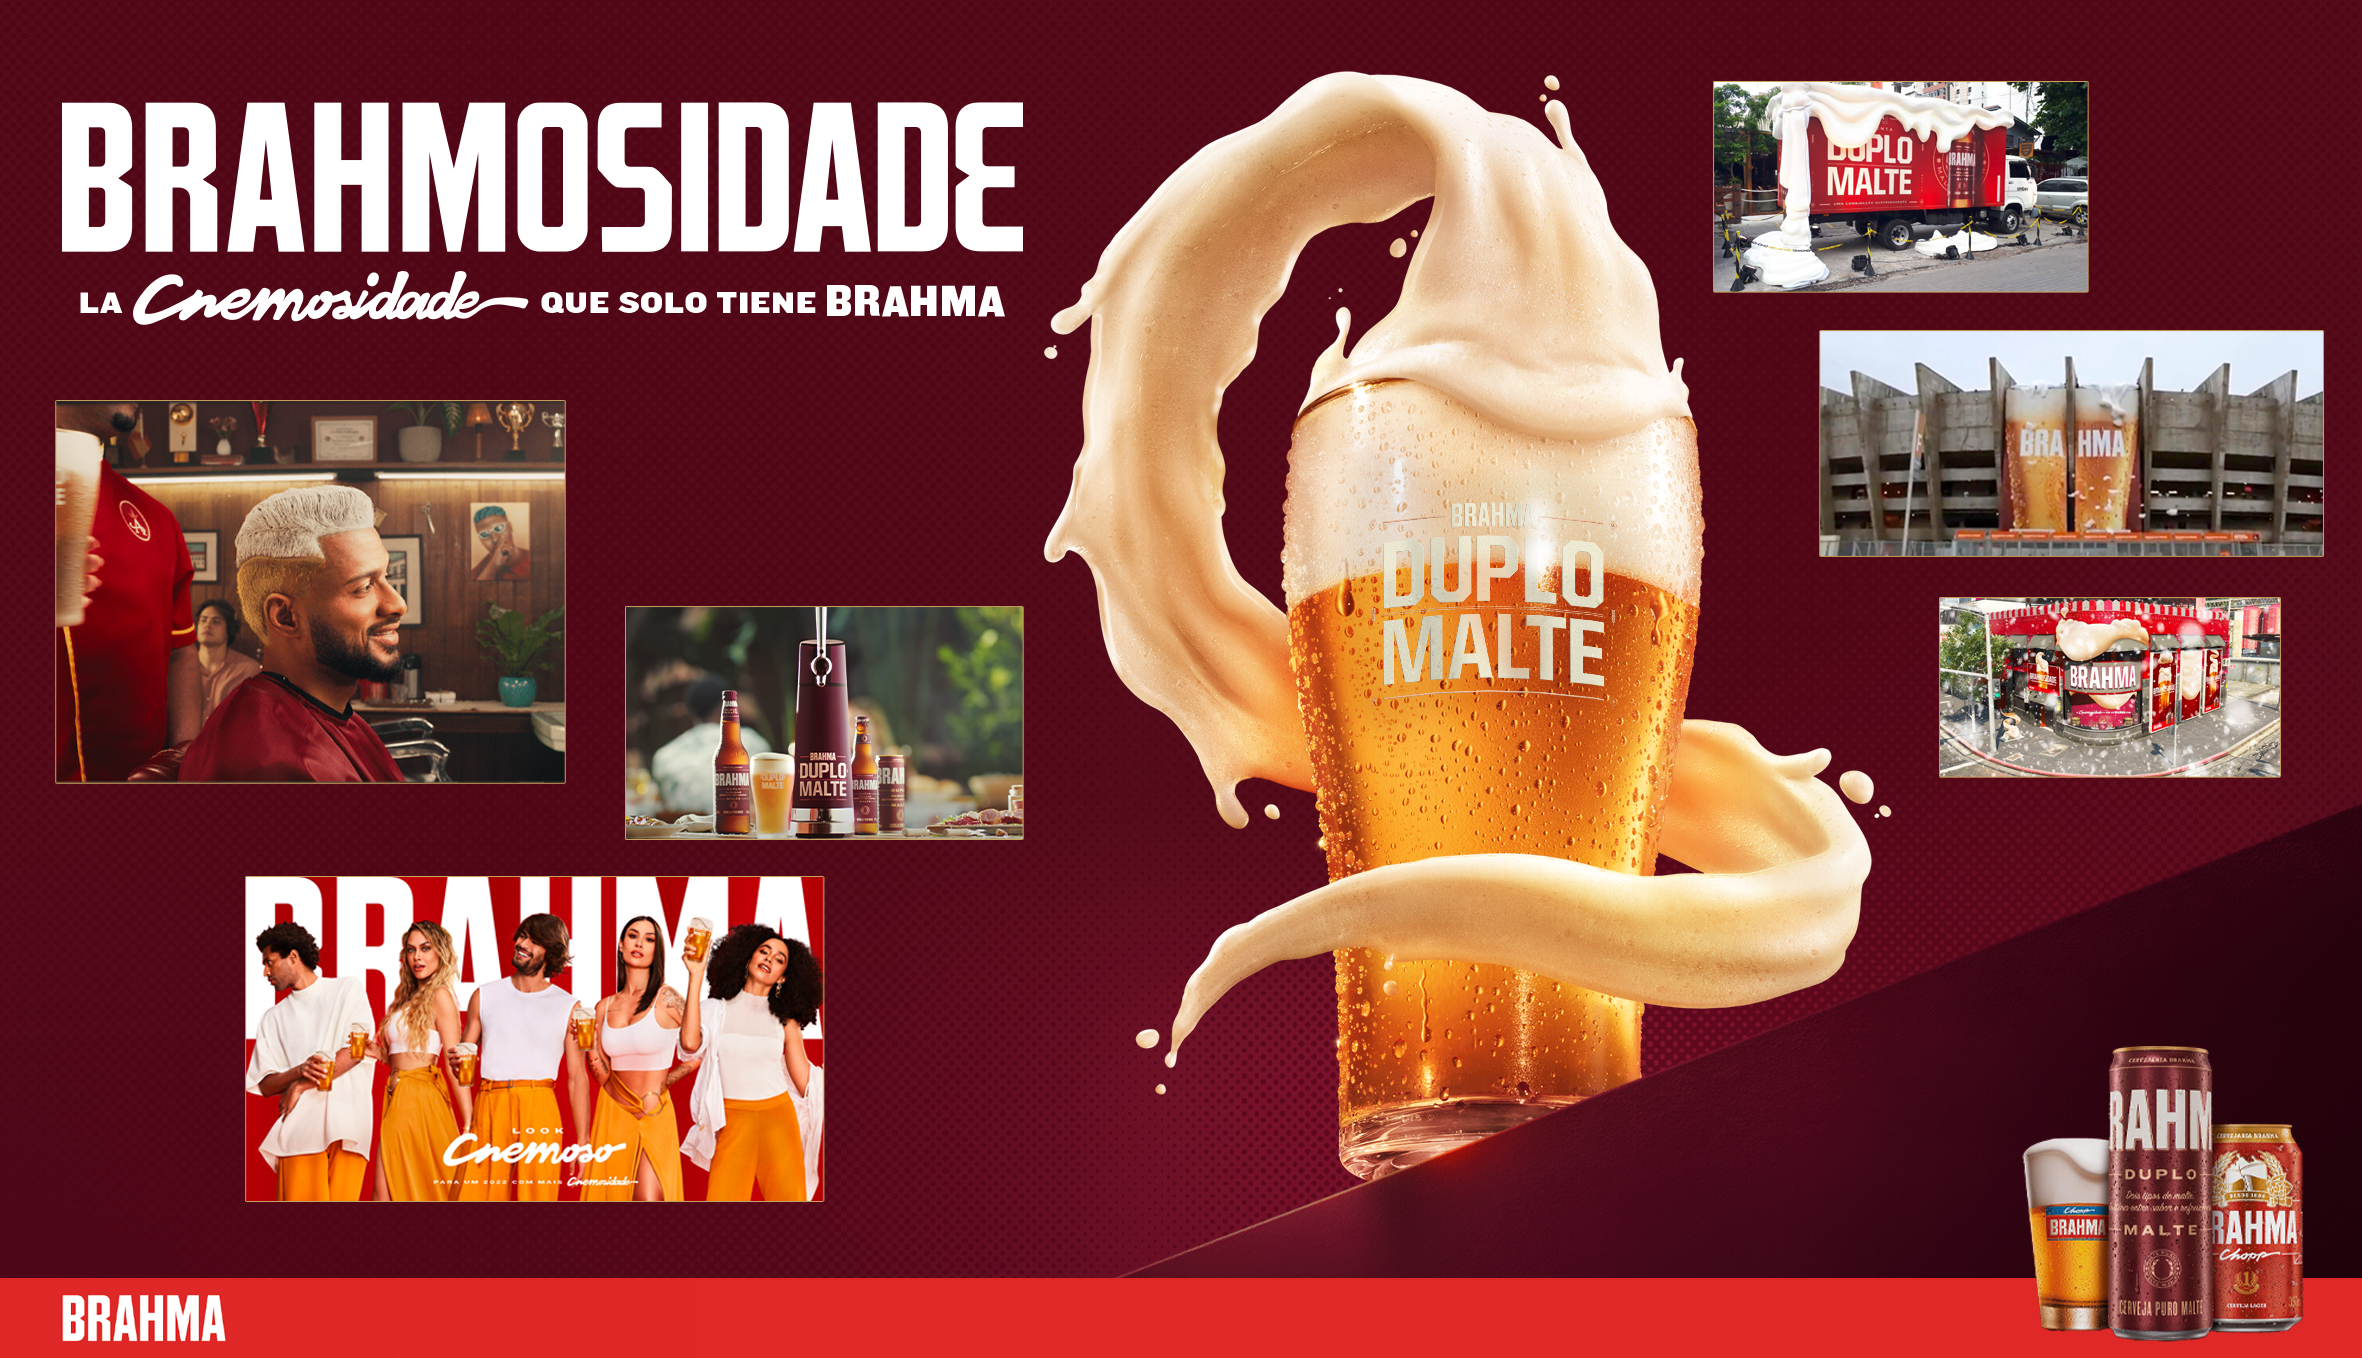 Brahmosidade: el reposicionamiento que consagró el regreso de la cerveza nº1 de los brasileños